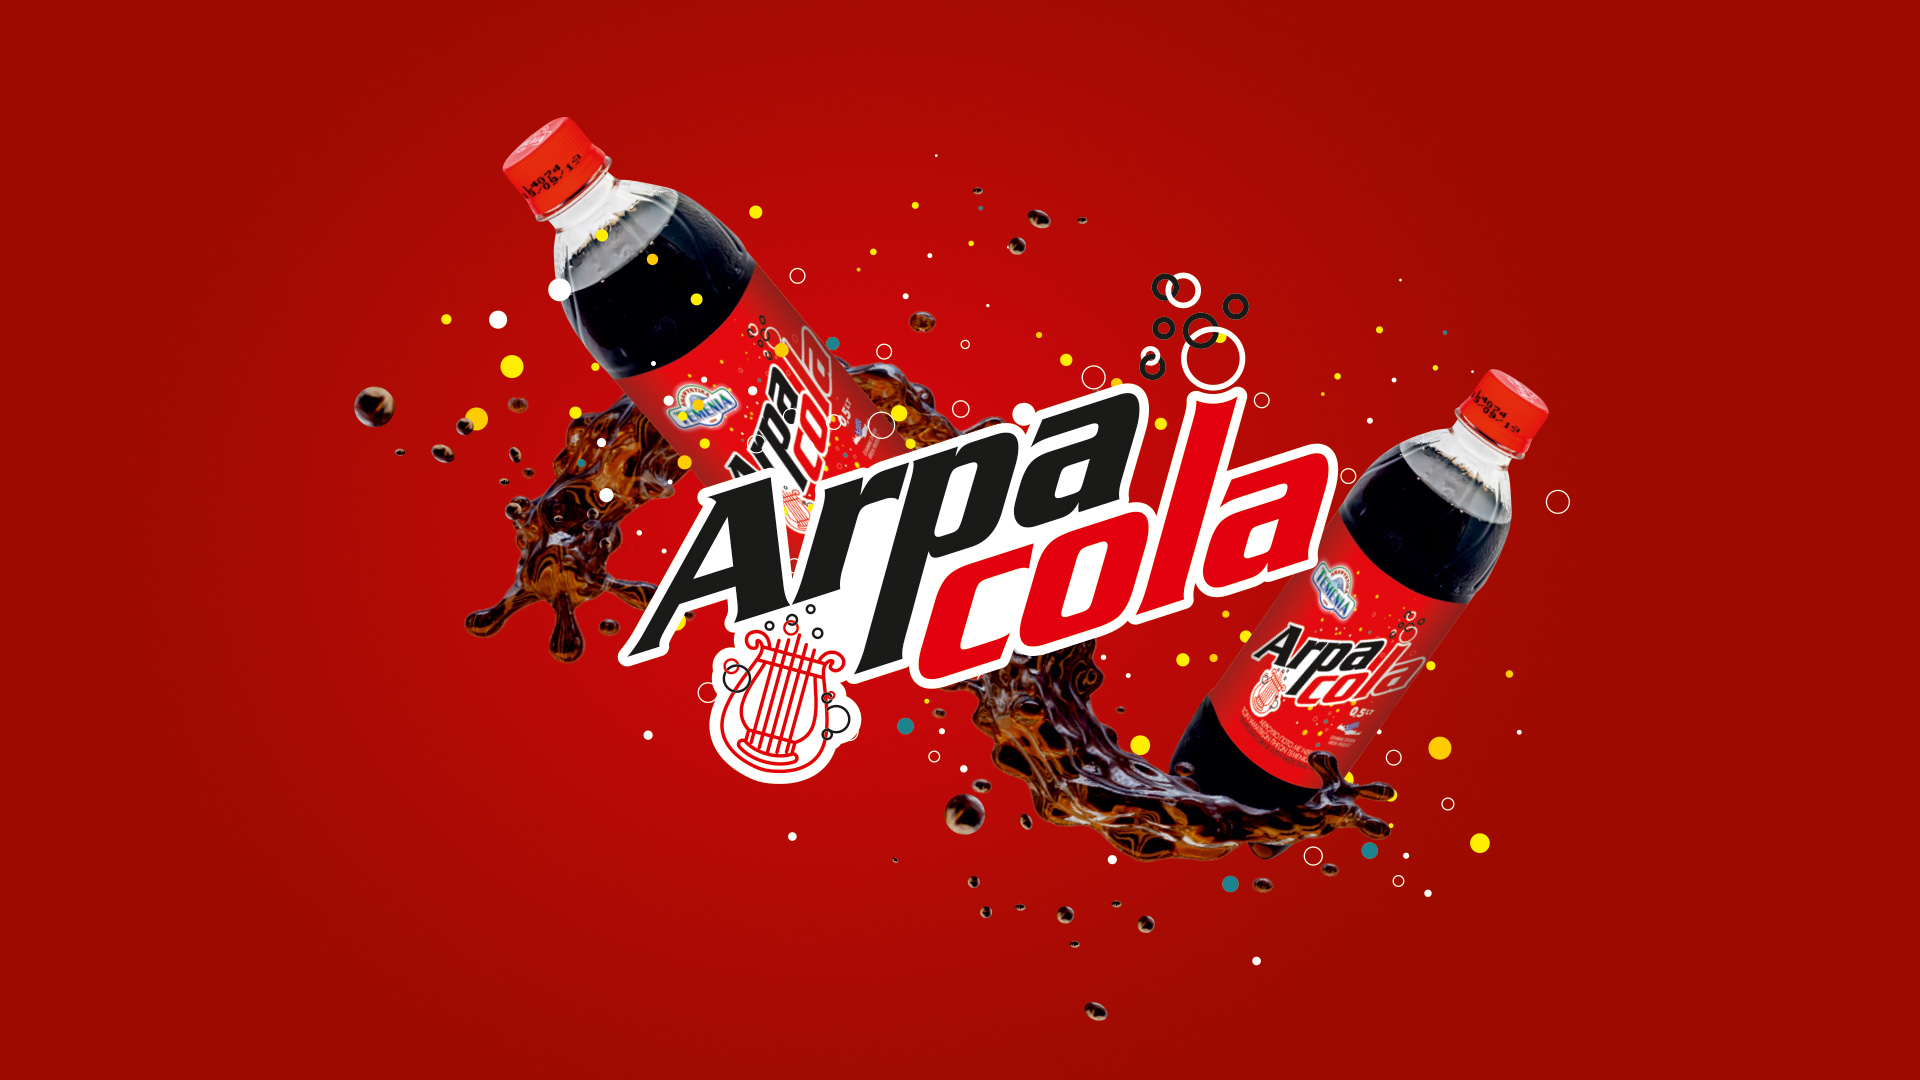 Arpa Cola